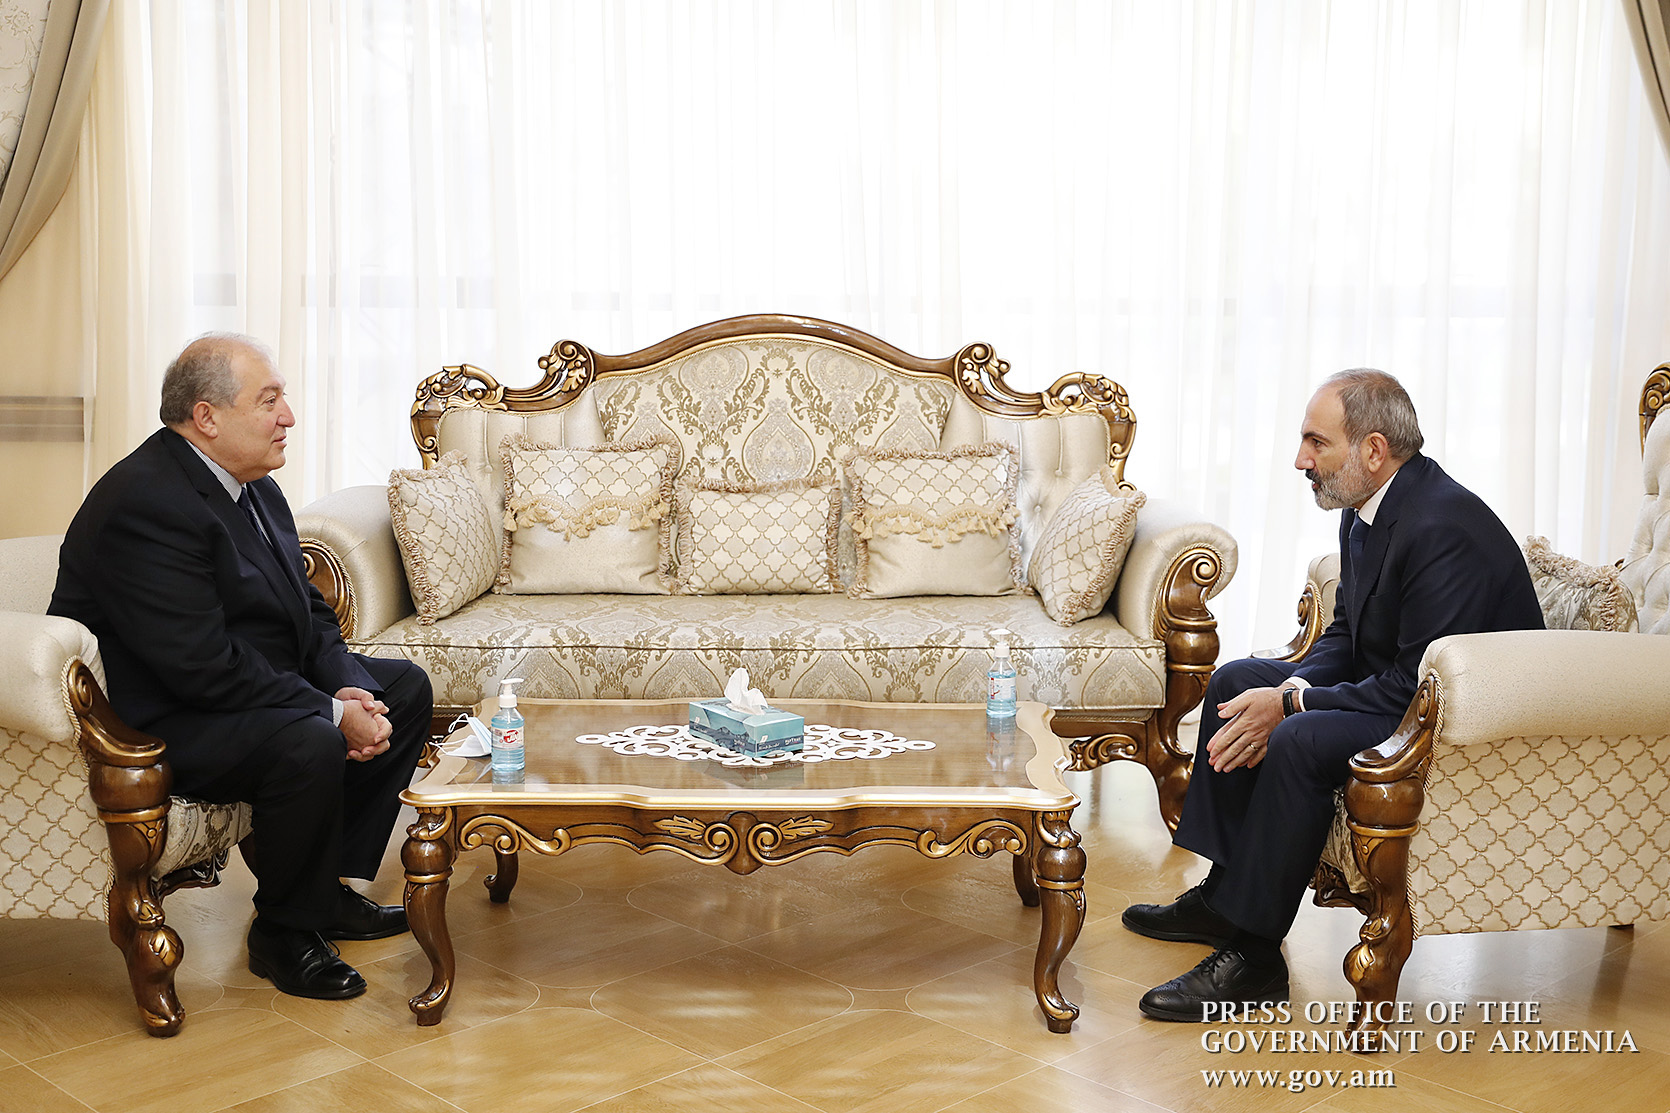 Վարչապետ Նիկոլ Փաշինյանն այսօր հանդիպում է ունեցել Հանրապետության նախագահ Արմեն Սարգսյանի հետ